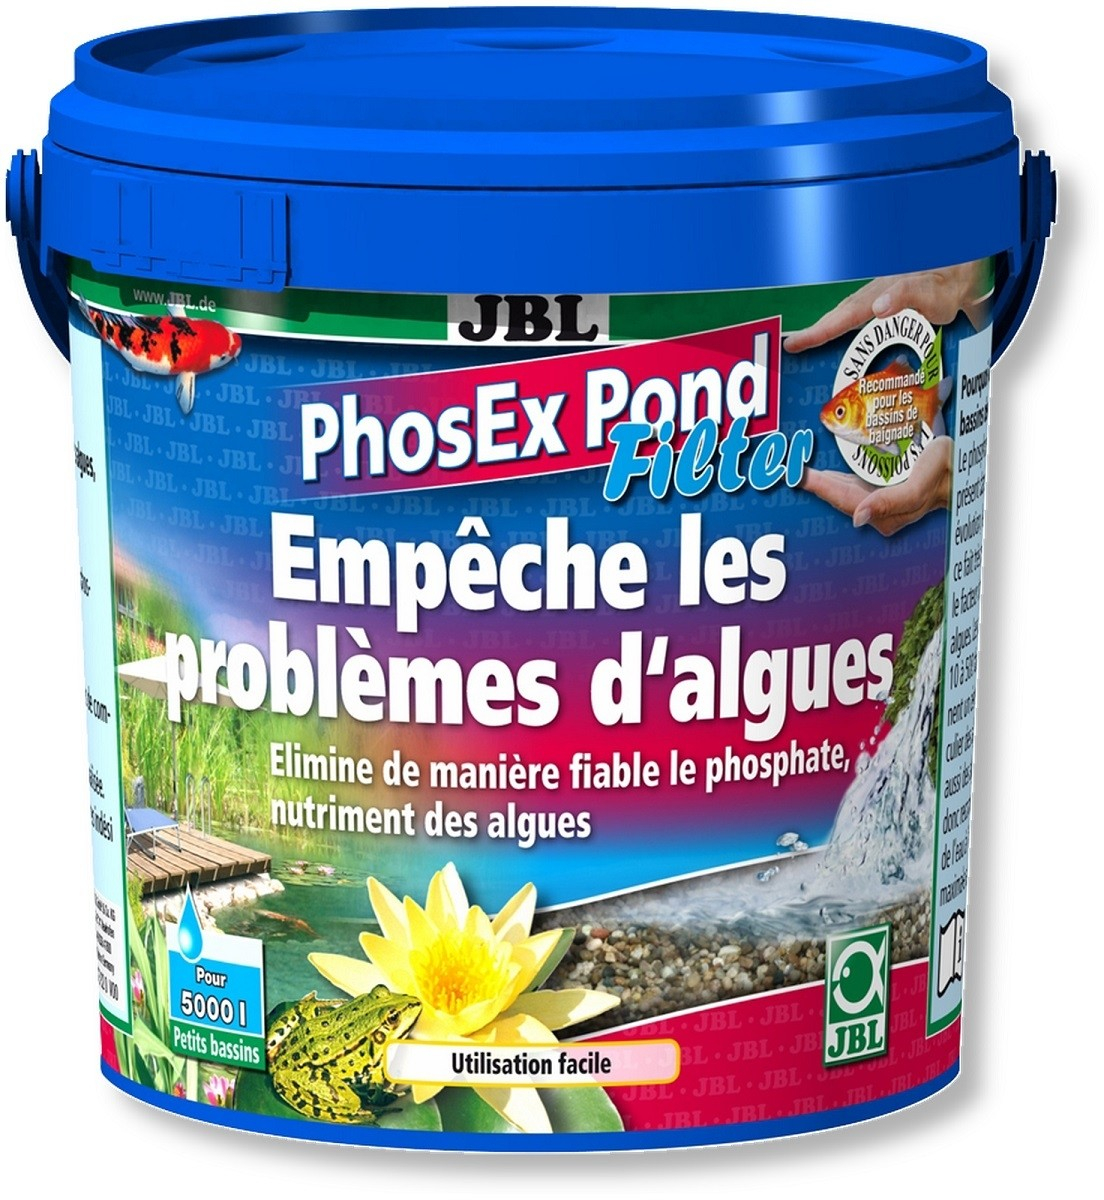 JBL PhosEx Pond Filter Eliminador de fosfatos para filtros de estanque